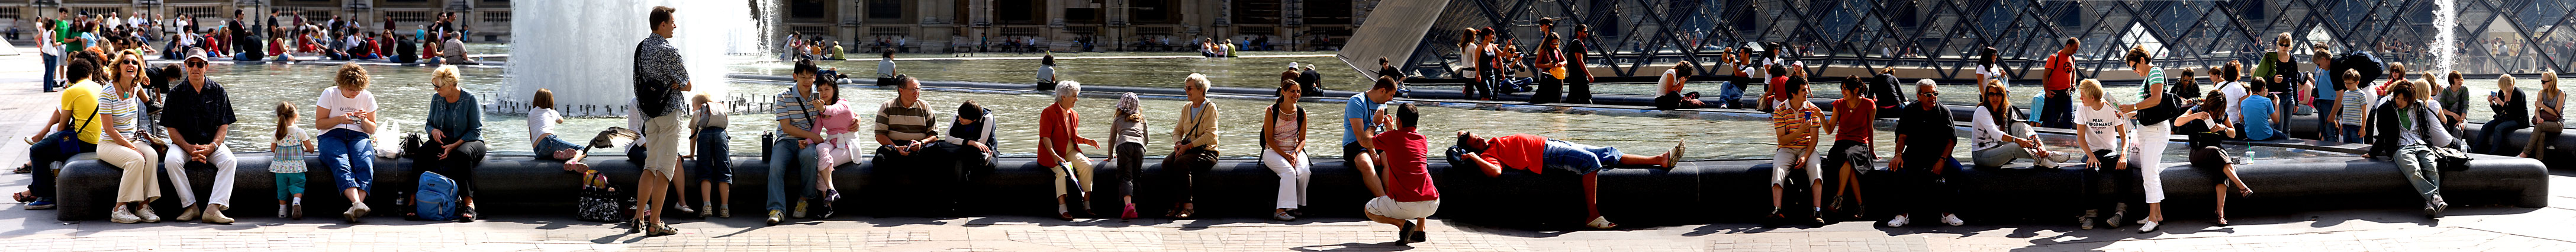 Louvre Pond, Paris, 2007